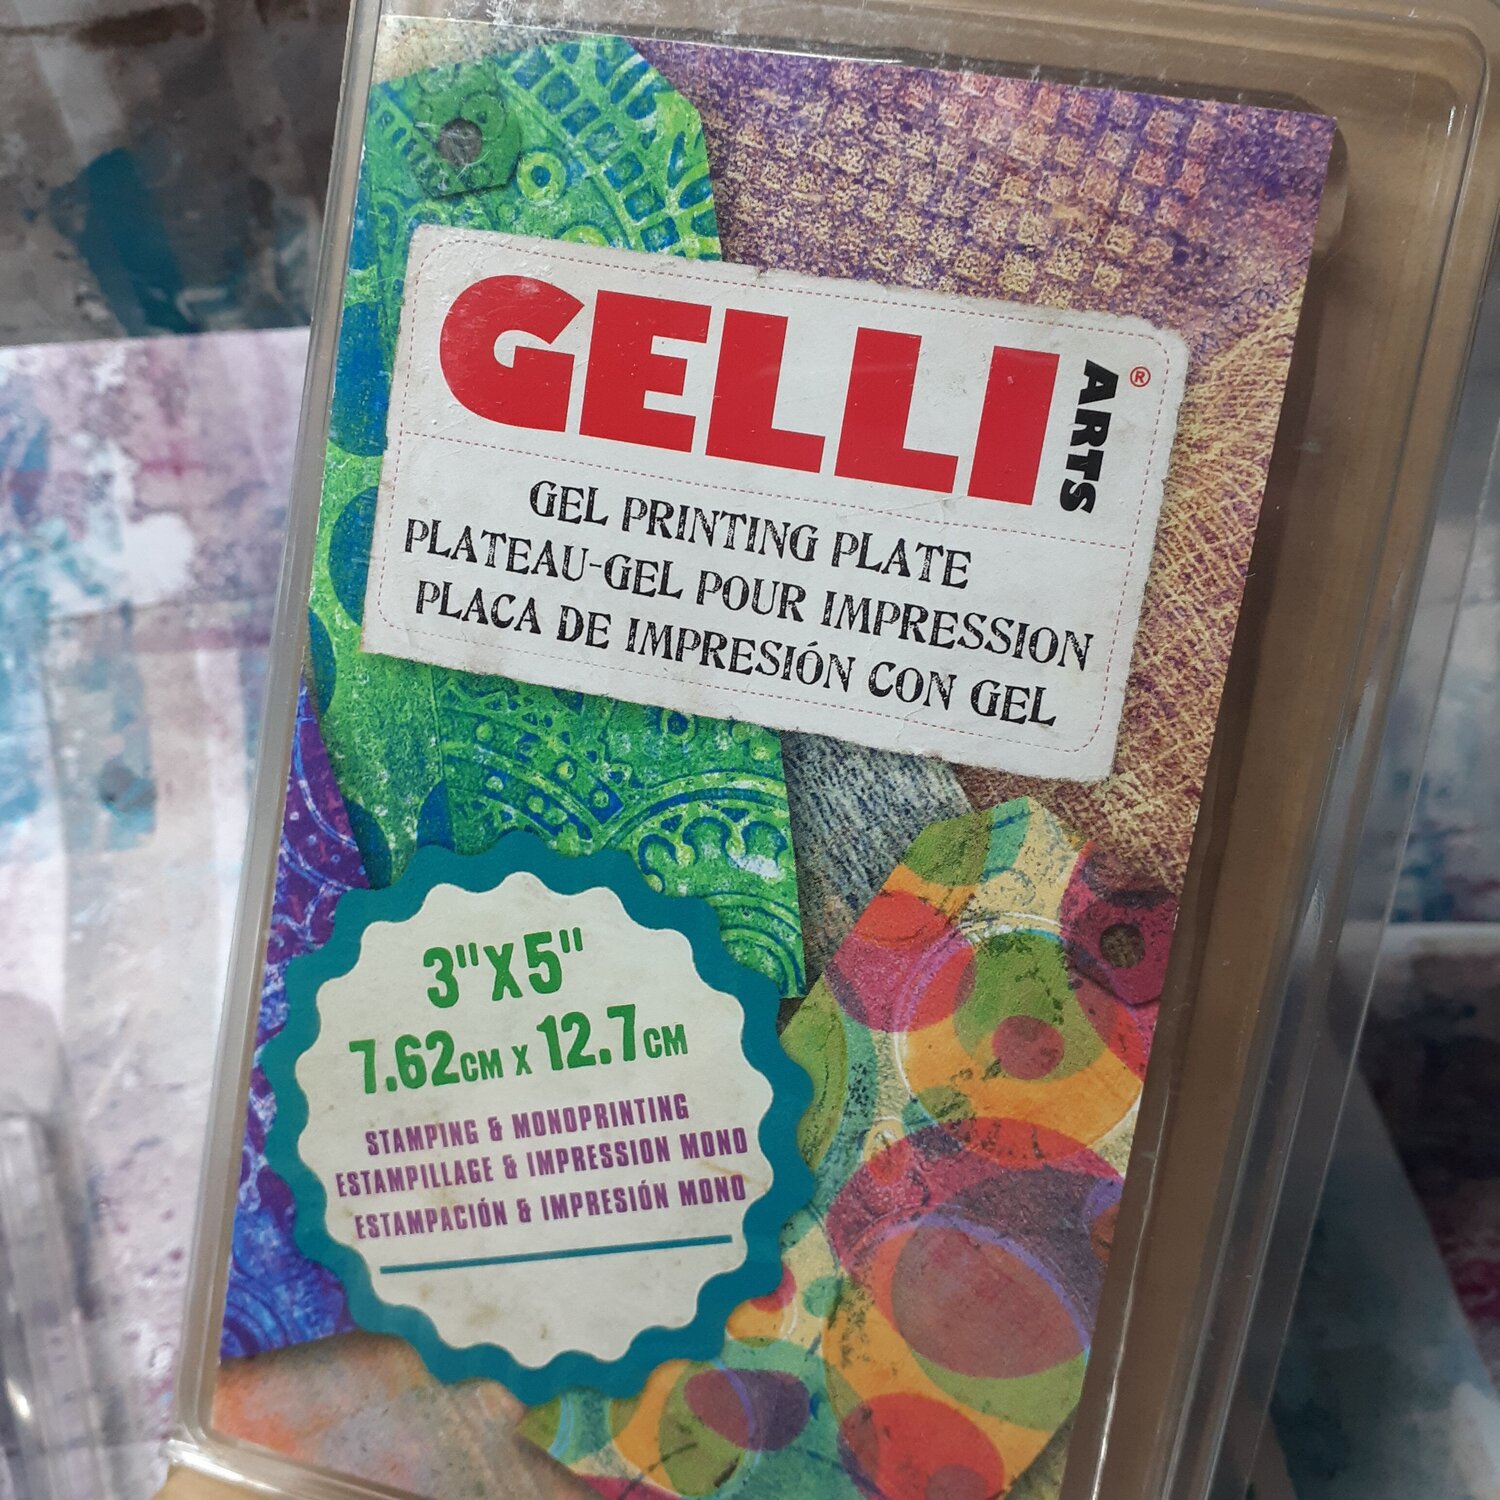 Gelli Arts Gel Printing Plate, 8